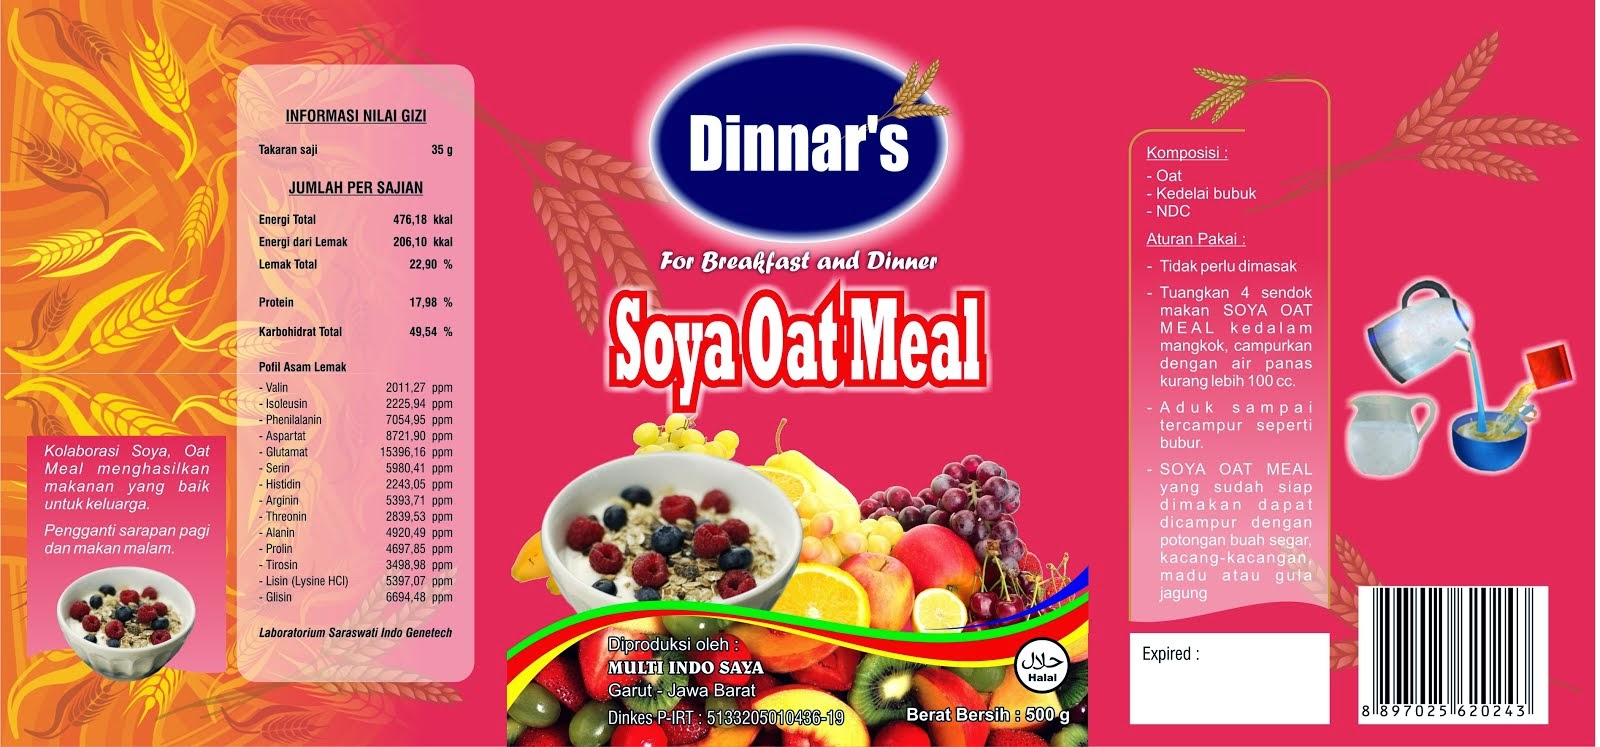 Dinnar's Soya Oatmeal